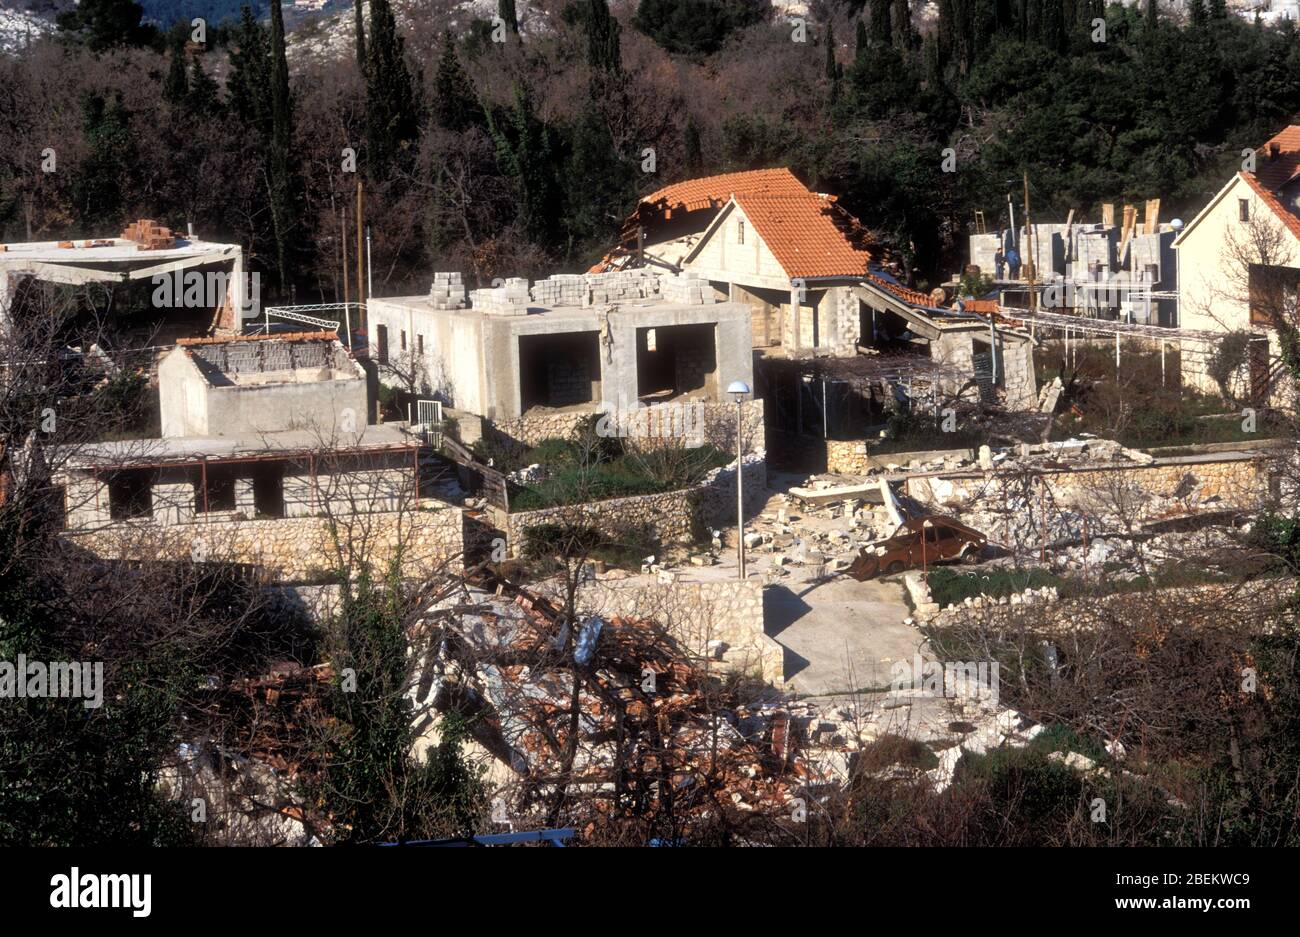 Dubrovnik 1994 - dommages de guerre causés par les bombardements serbes sur des maisons dans un village près de Dubrovnik, Croatie Banque D'Images